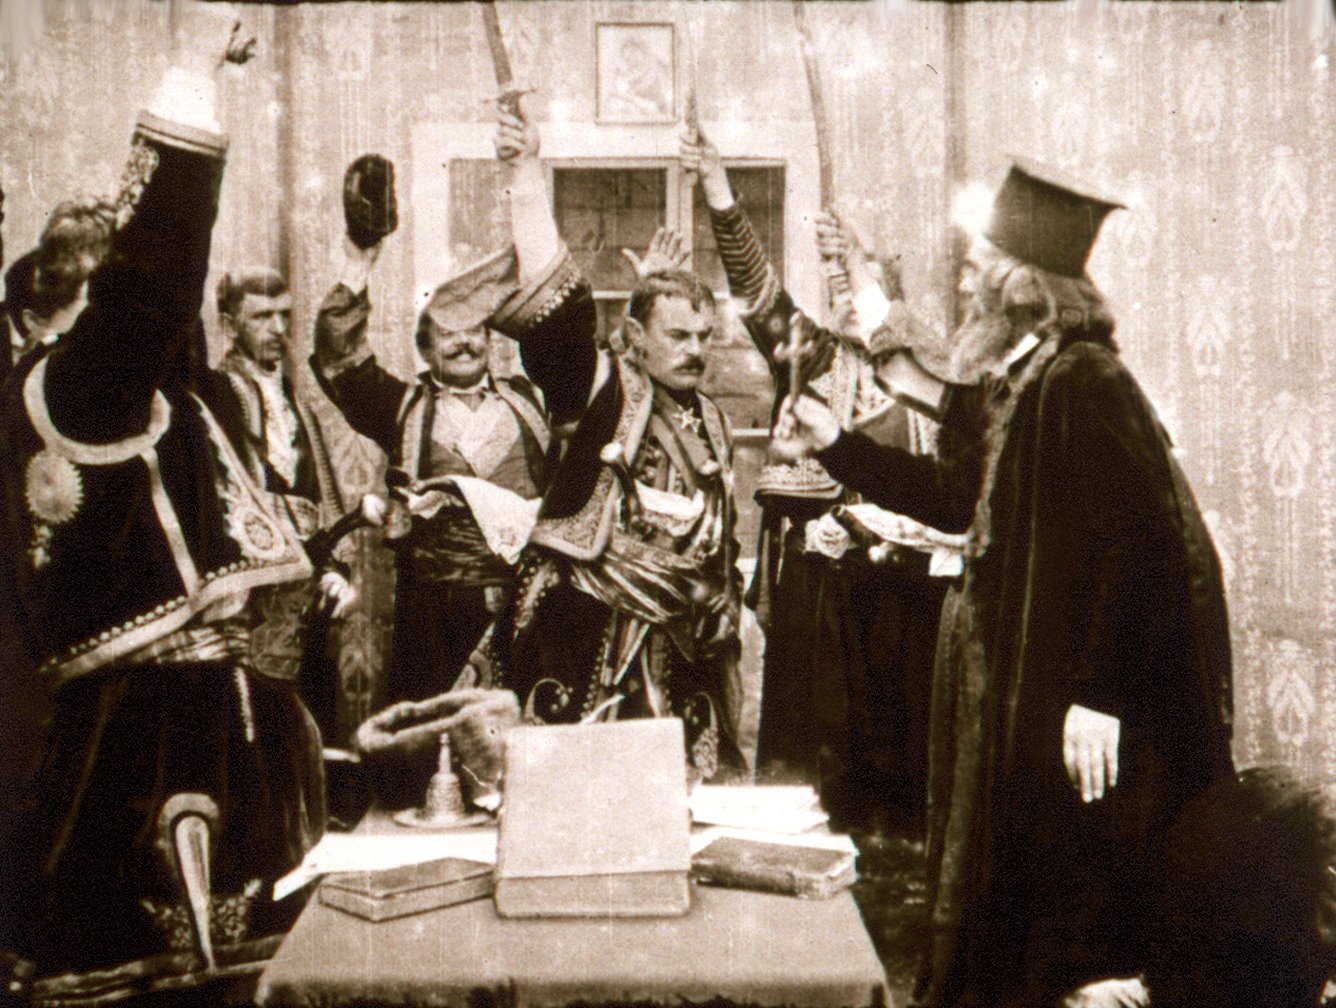 Prvo prikazivanje filma, u kome glavnu ulogu igra Milorad Petrovi, za iru publiku bilo je 30. novembra 1911. godine/Arhiv Jugoslovenske kinoteke